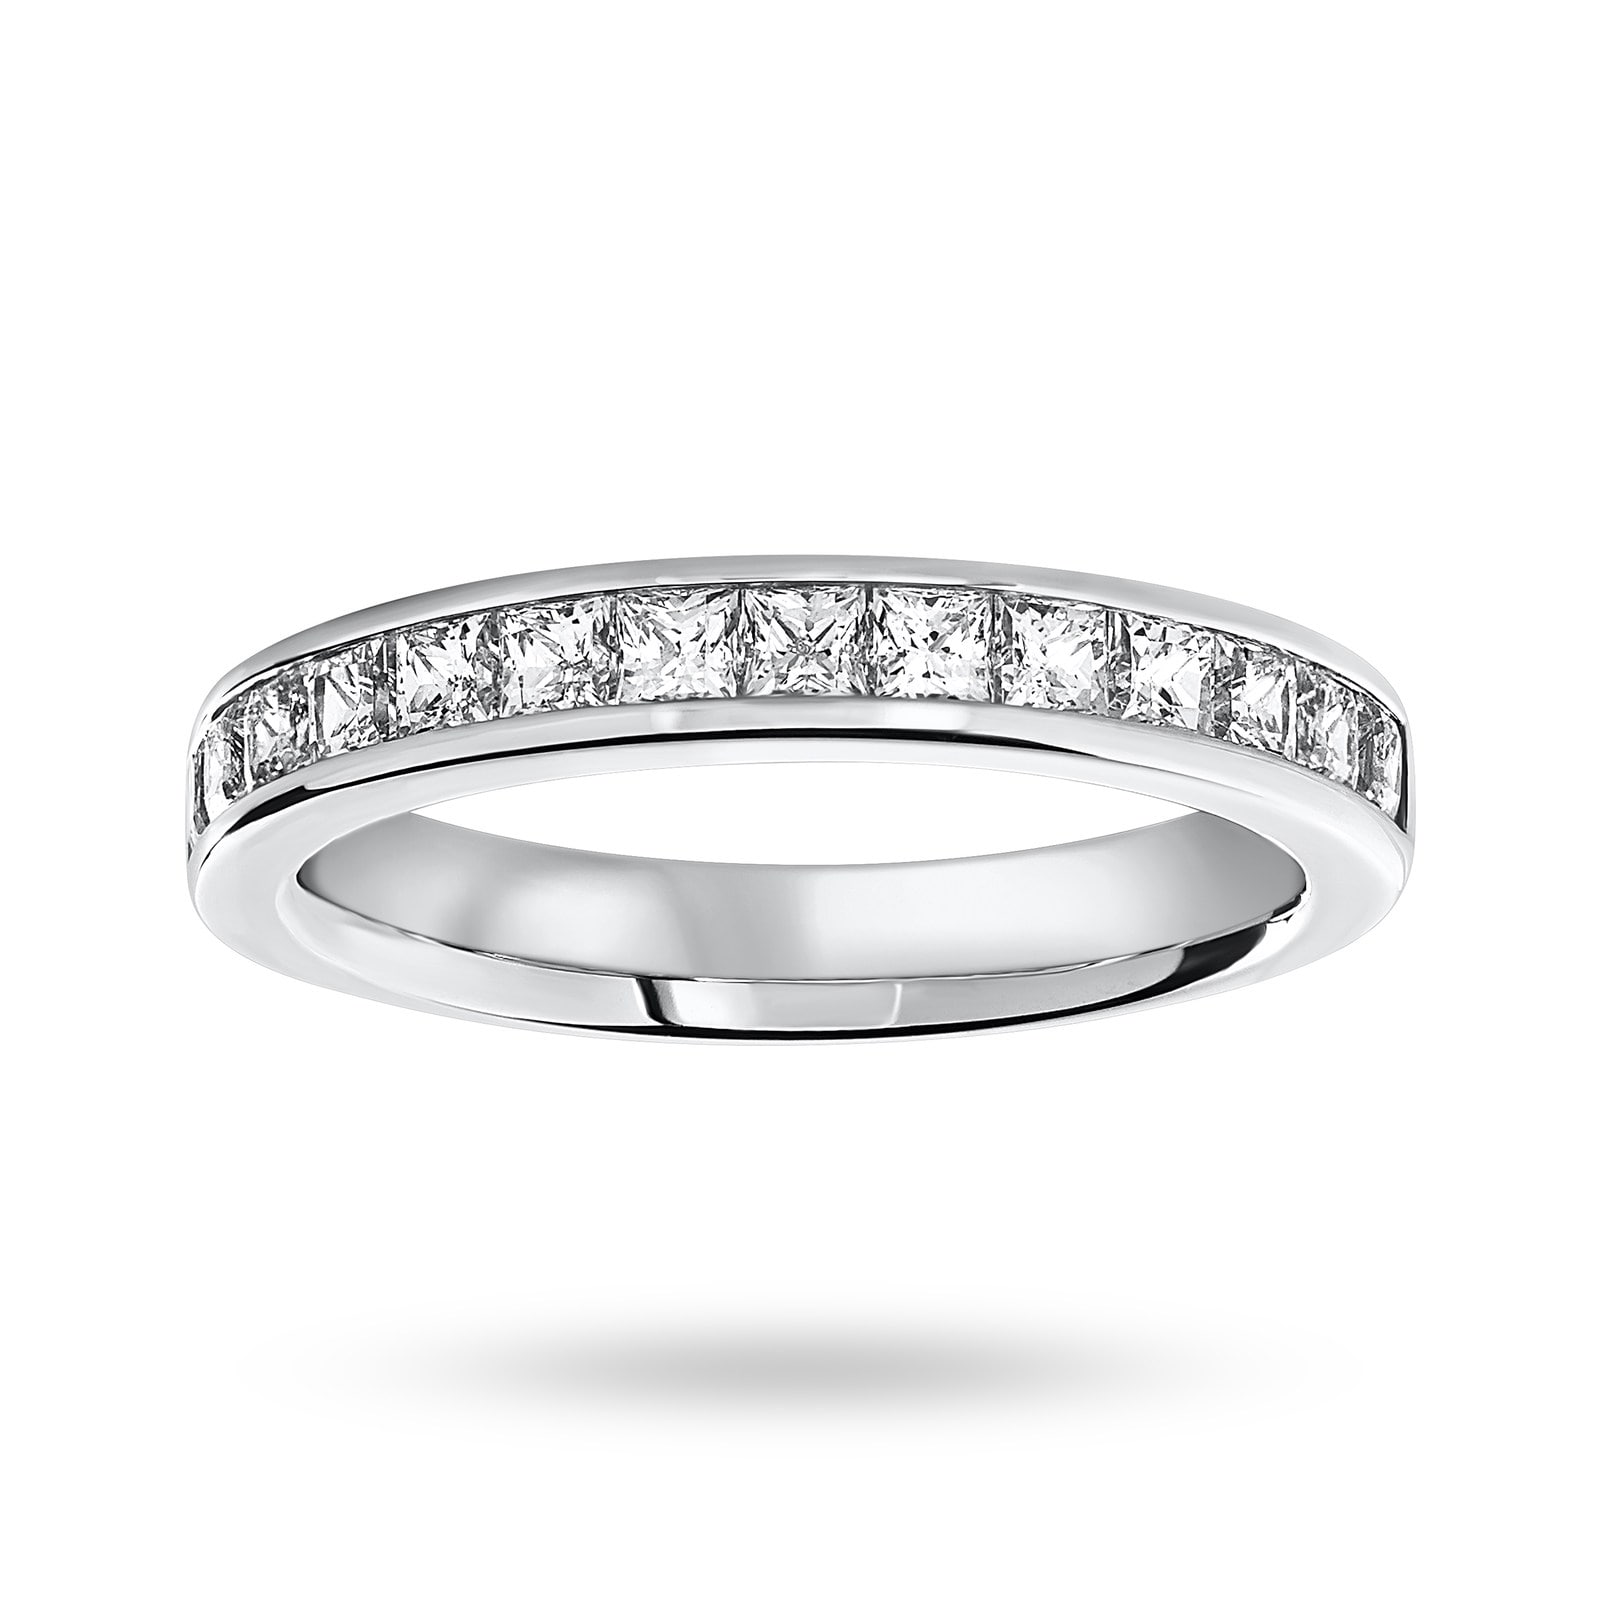 18 Carat White Gold 1.00 Carat Princess Cut Half Eternity Ring - Ring Size N